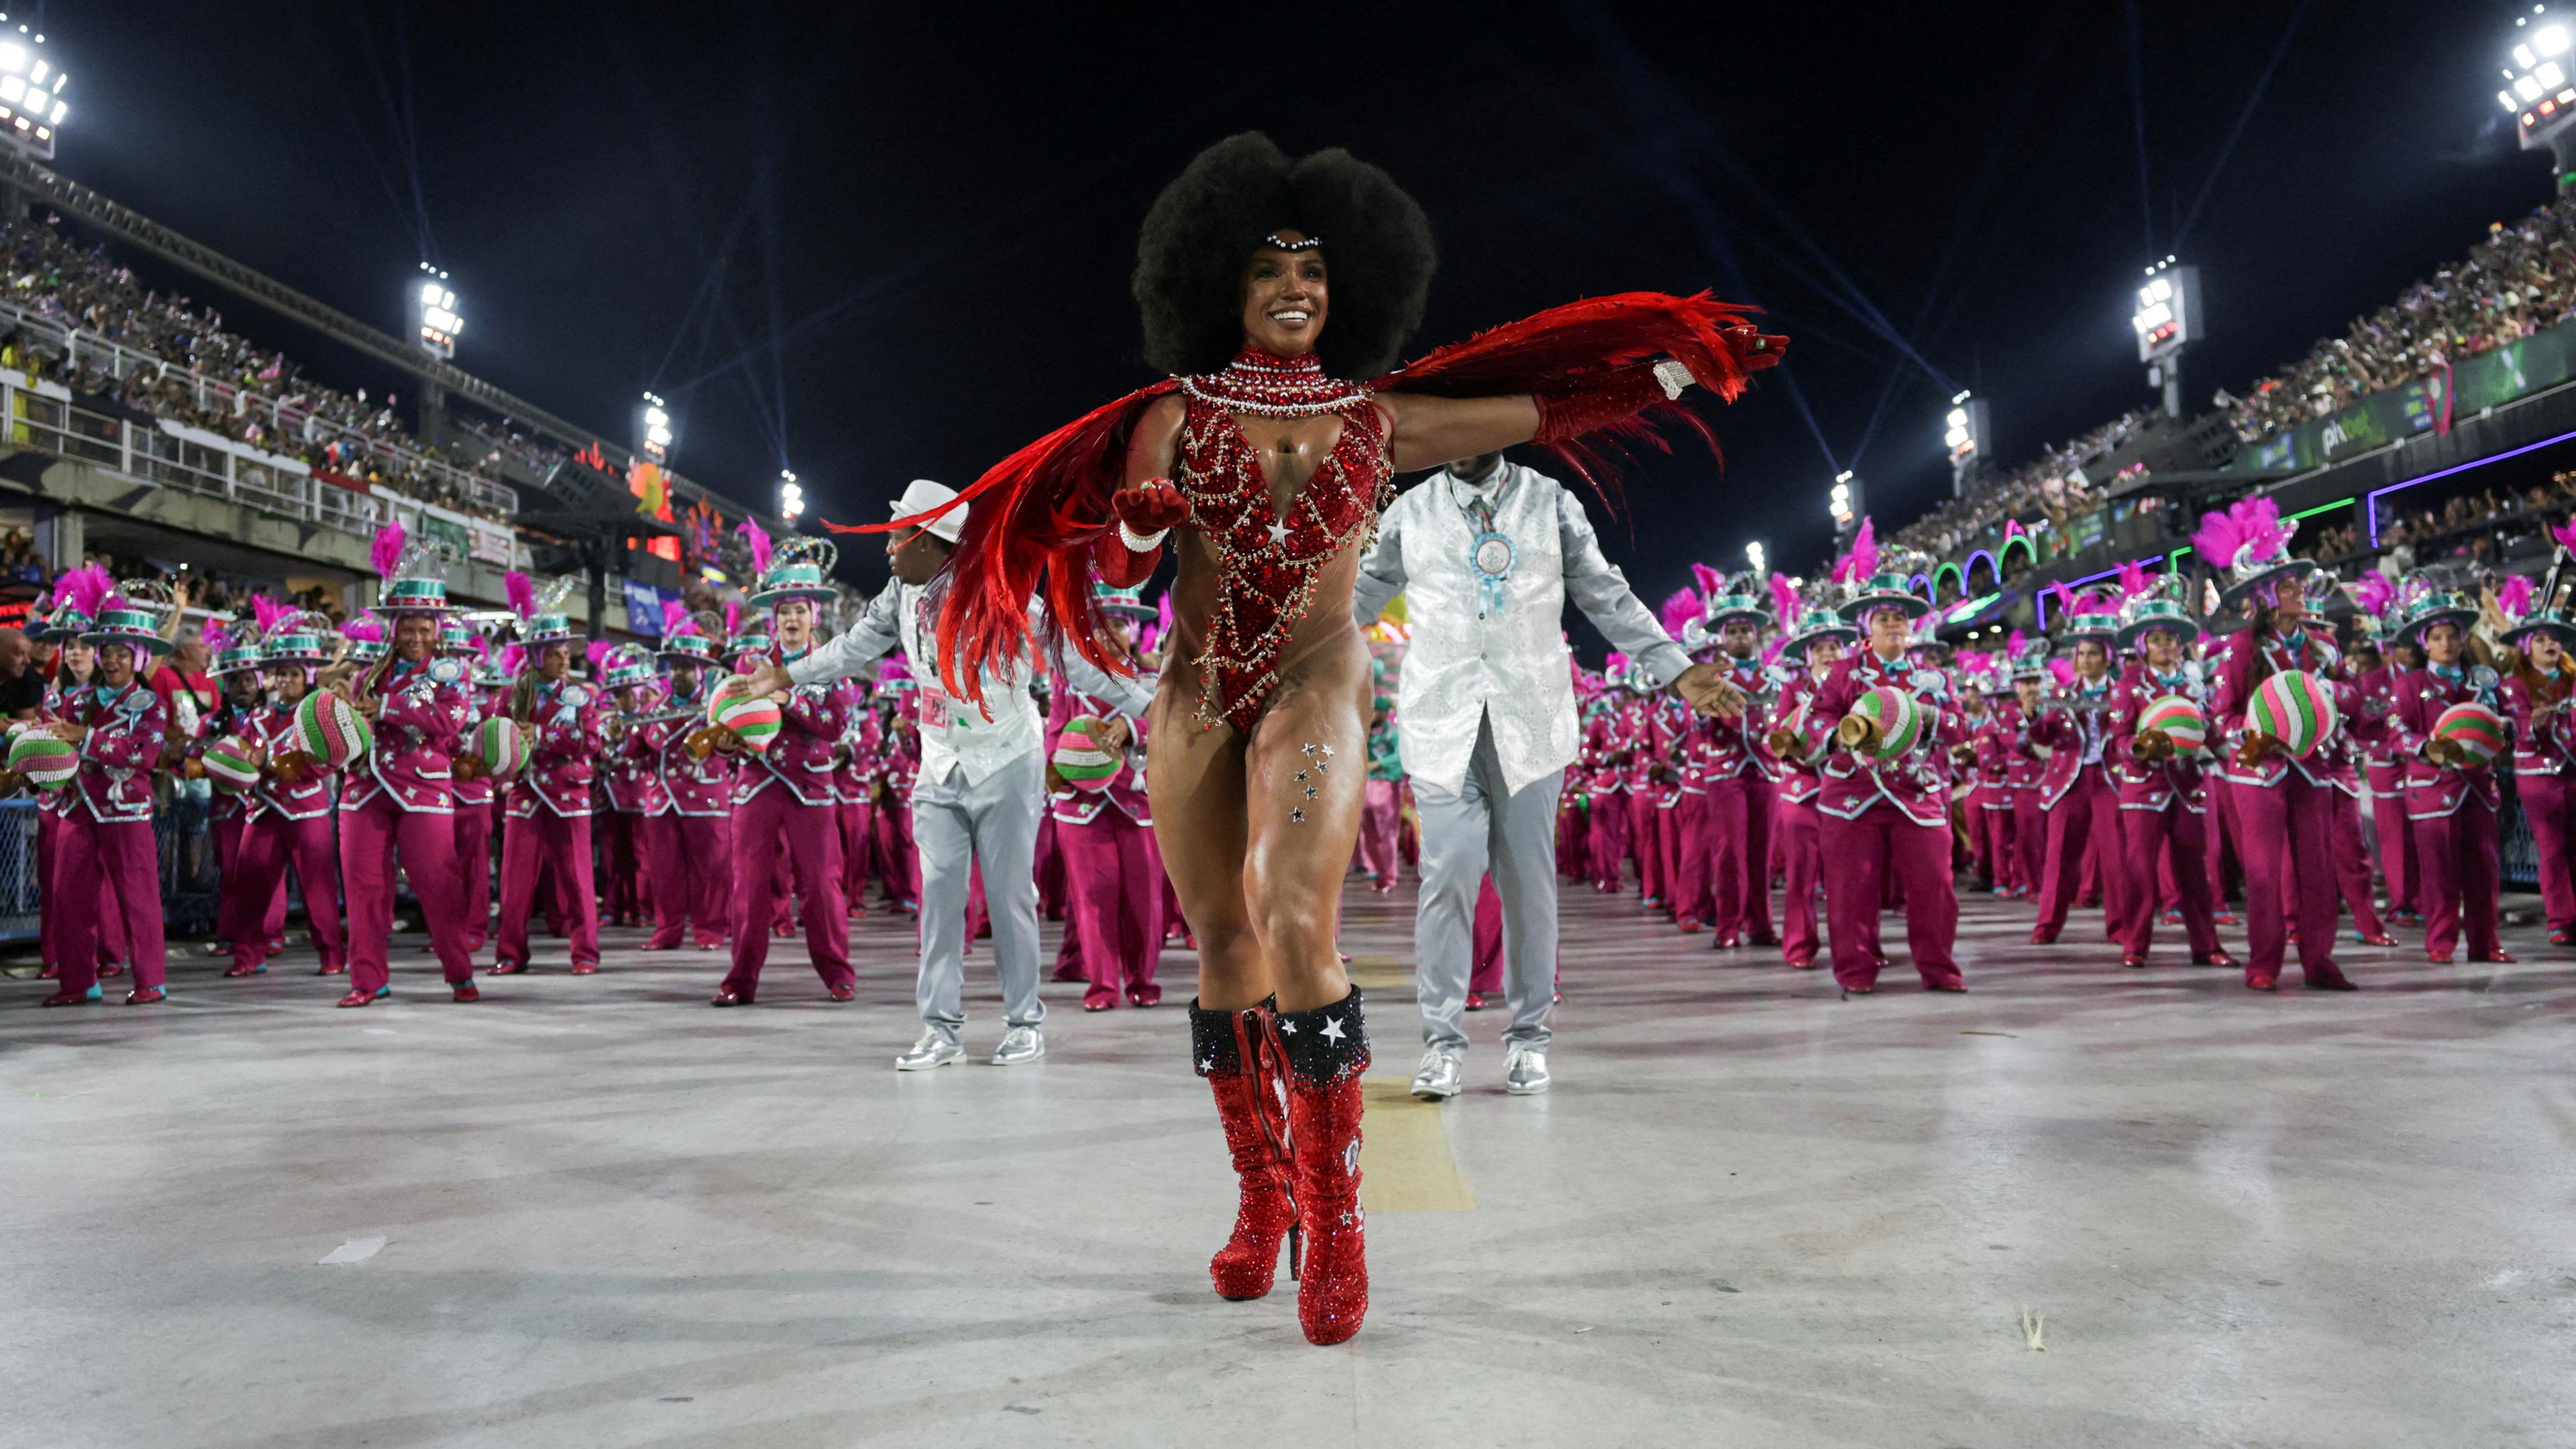 Trommelkönigin Evelyn Bastos von der Sambaschule Mangueira tritt in der Nacht der Karnevalsparade im Sambadrome in Rio de Janeiro, Brasilien